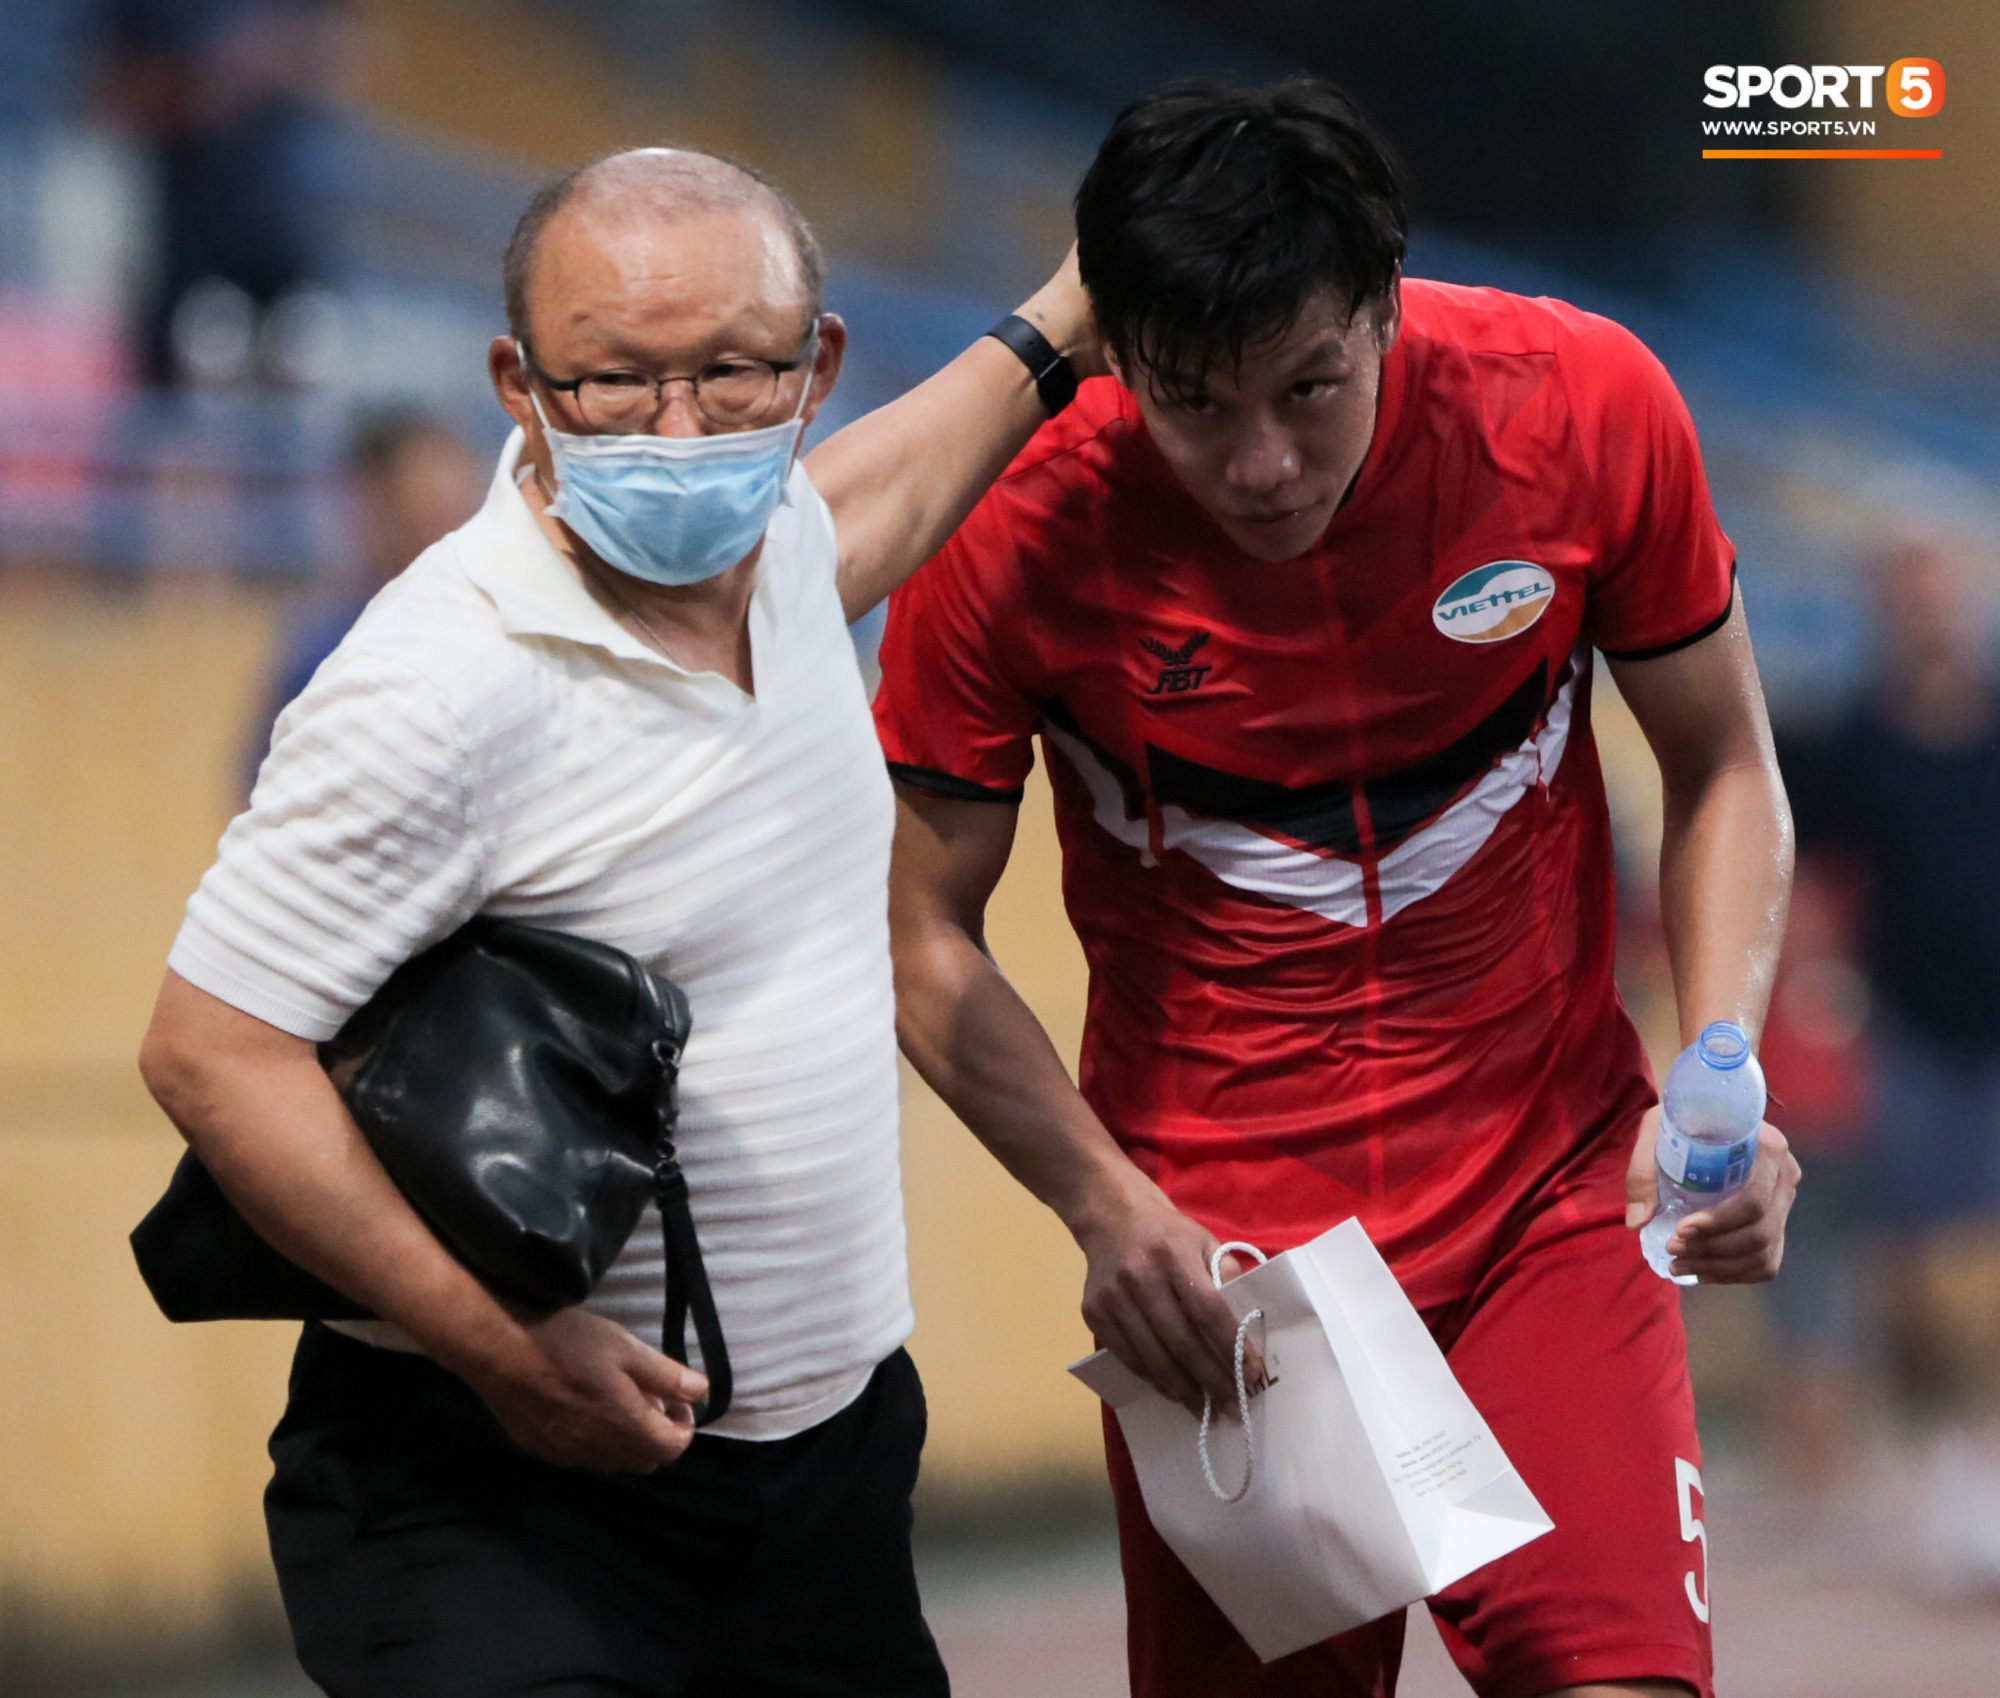 HLV Park Hang-seo mang bất ngờ cho đội trưởng tuyển Việt Nam, chưa kịp cảm ơn thì thầy đã đi mất - Ảnh 2.